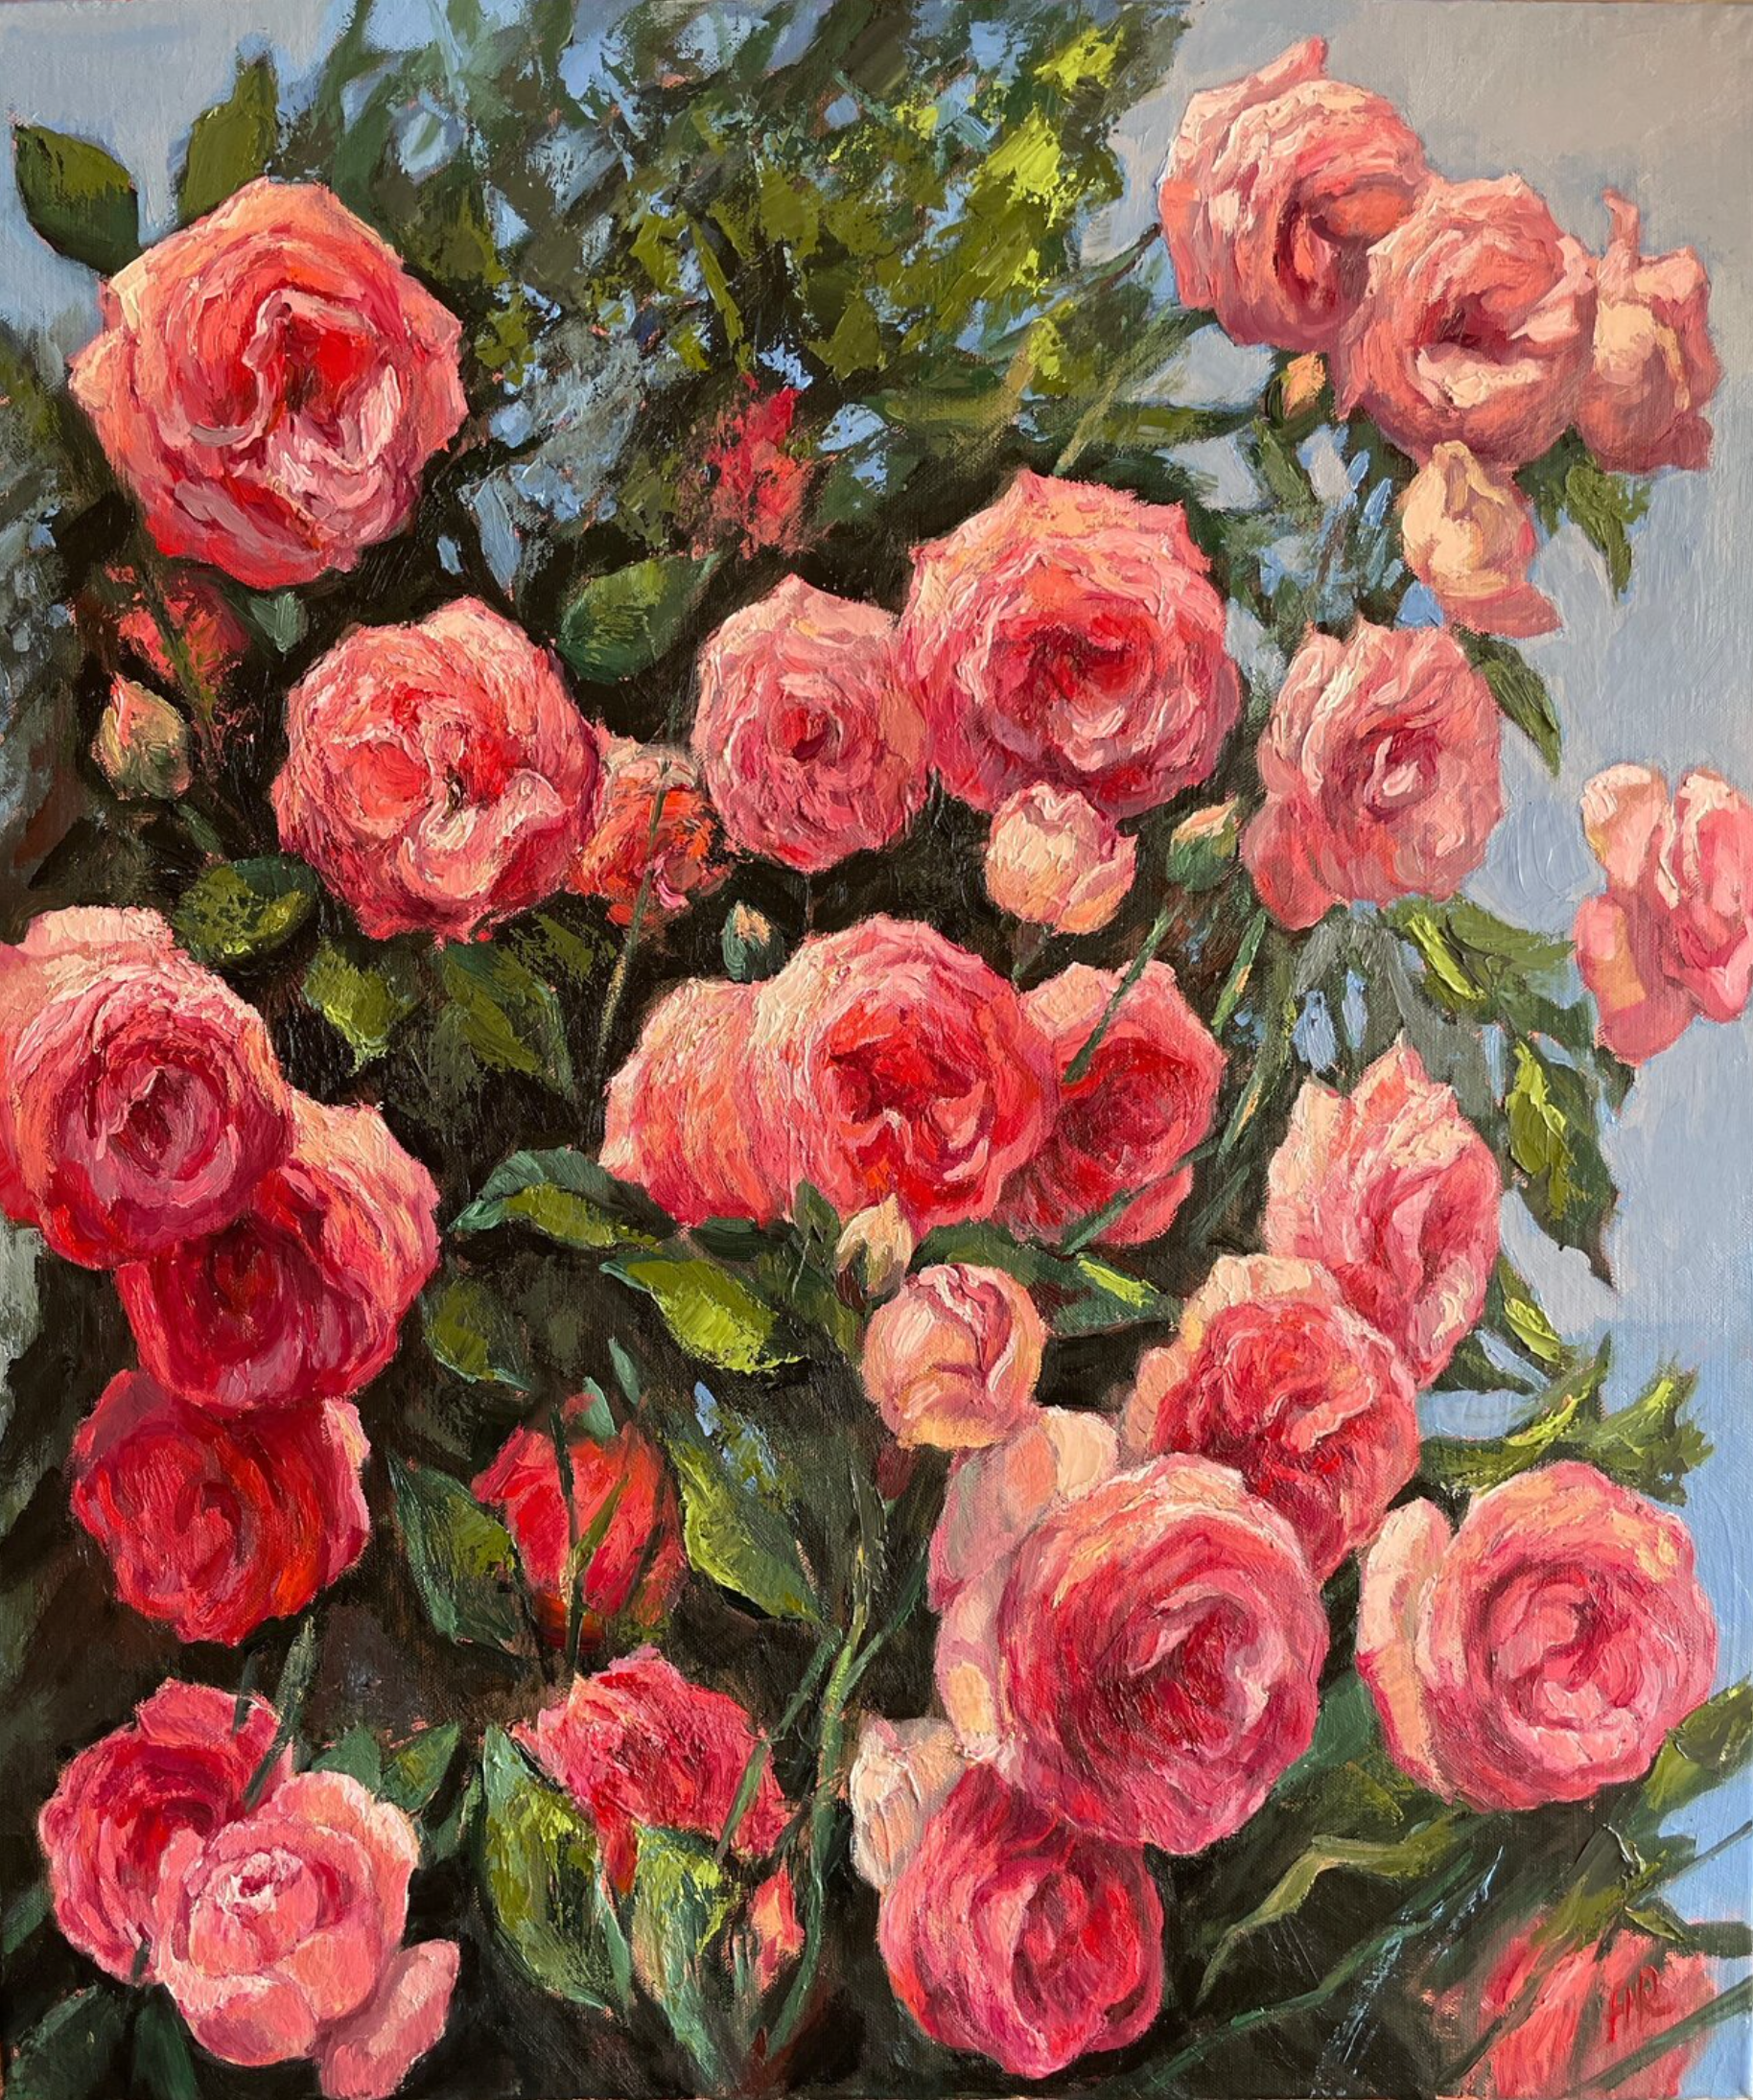 安娜-雷兹尼科娃的 "夏日一瞥 "画作显示，用印象技术的大量笔触，用毛笔在画布上画出华丽的玫瑰花丛。花朵是粉红色、玫瑰色和红色，叶子是浅绿色。